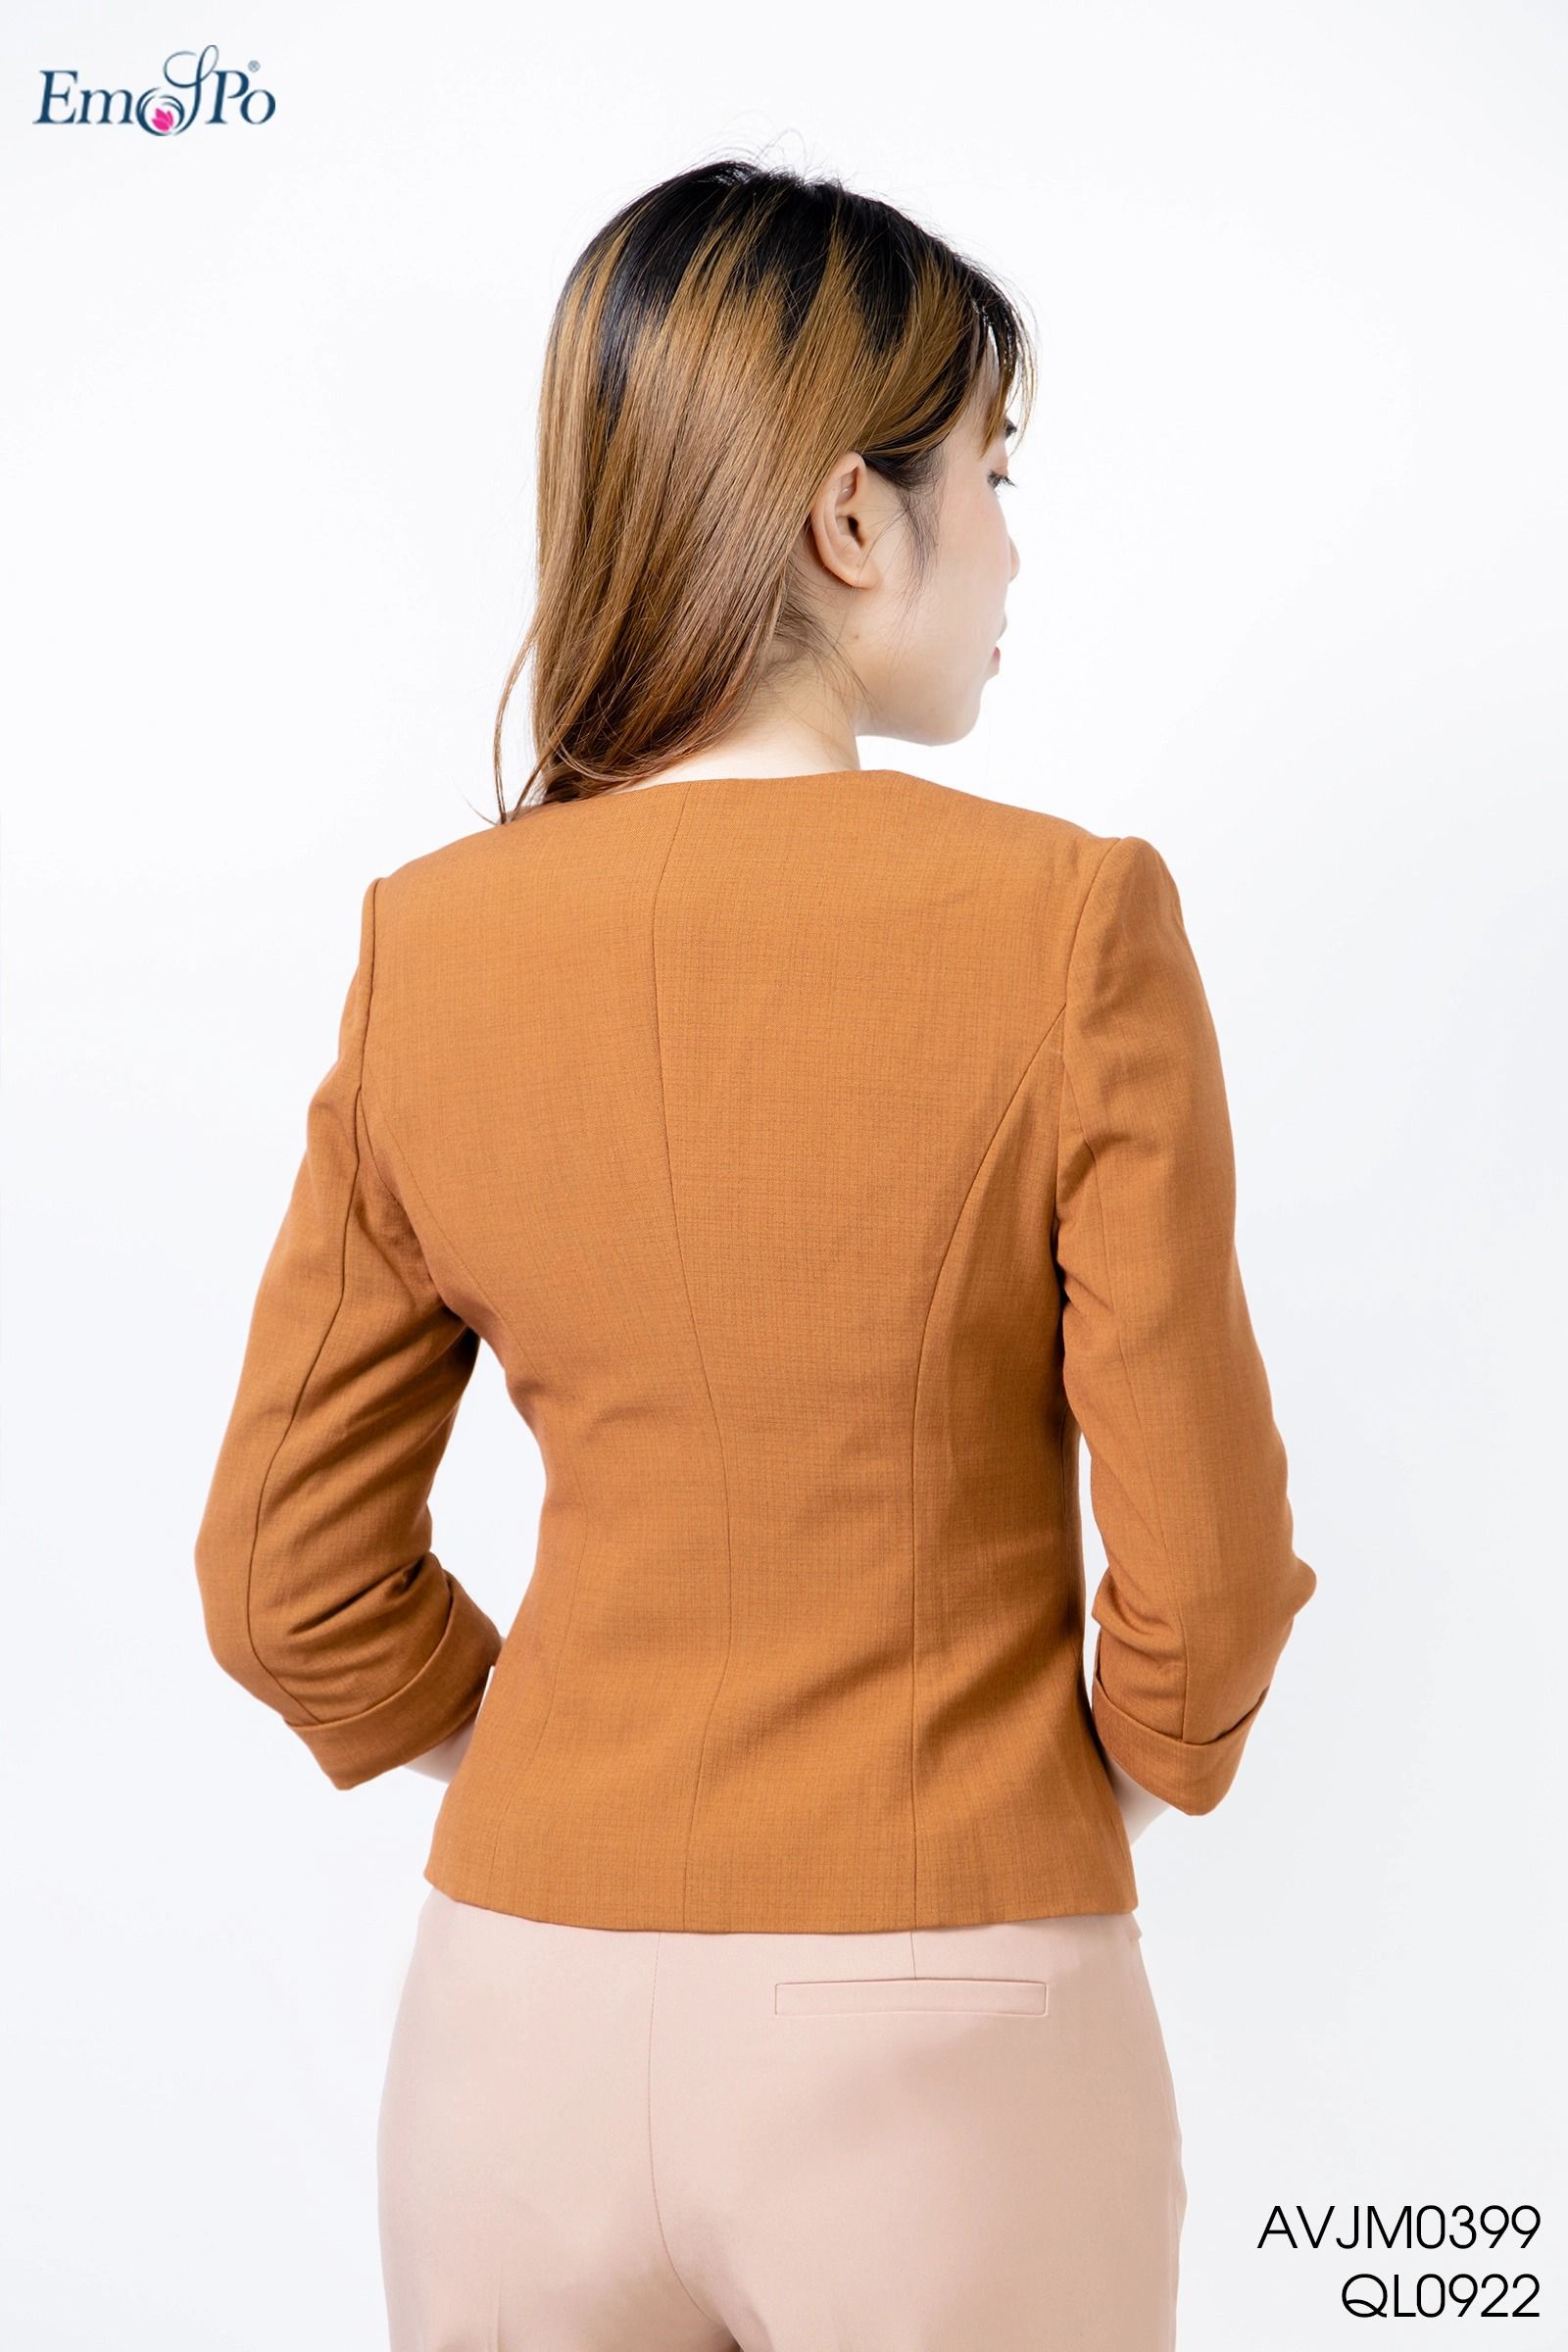 Áo vest nữ công sở kiểu cổ tròn màu vàng cam V475 tại Thời Trang Thủy